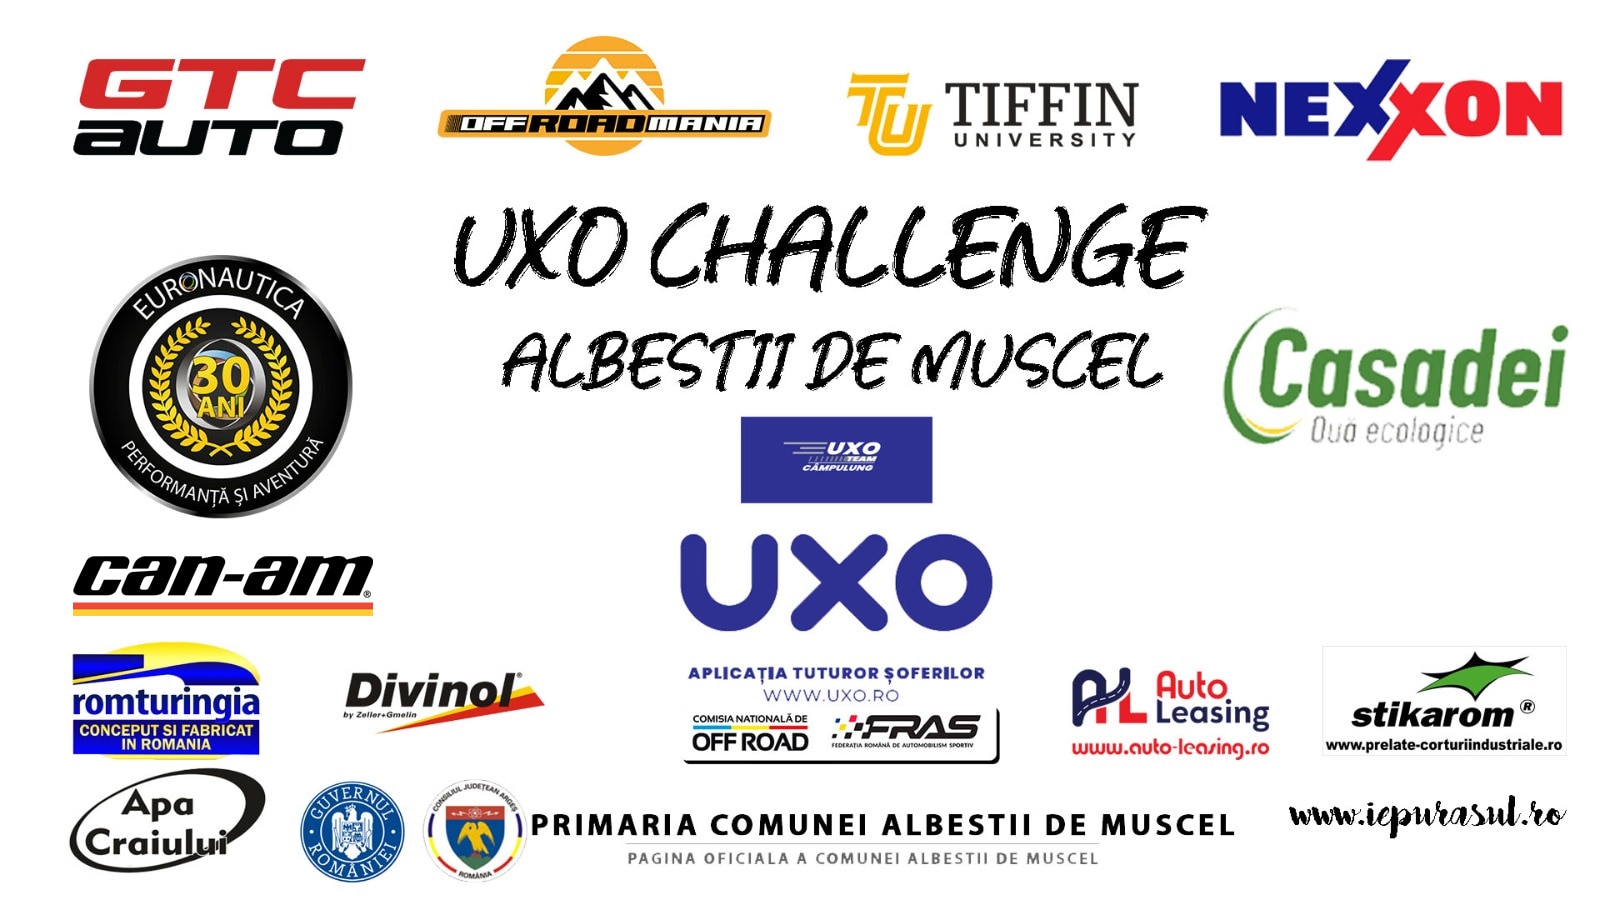 uxo-challenge-albestii-de-muscel